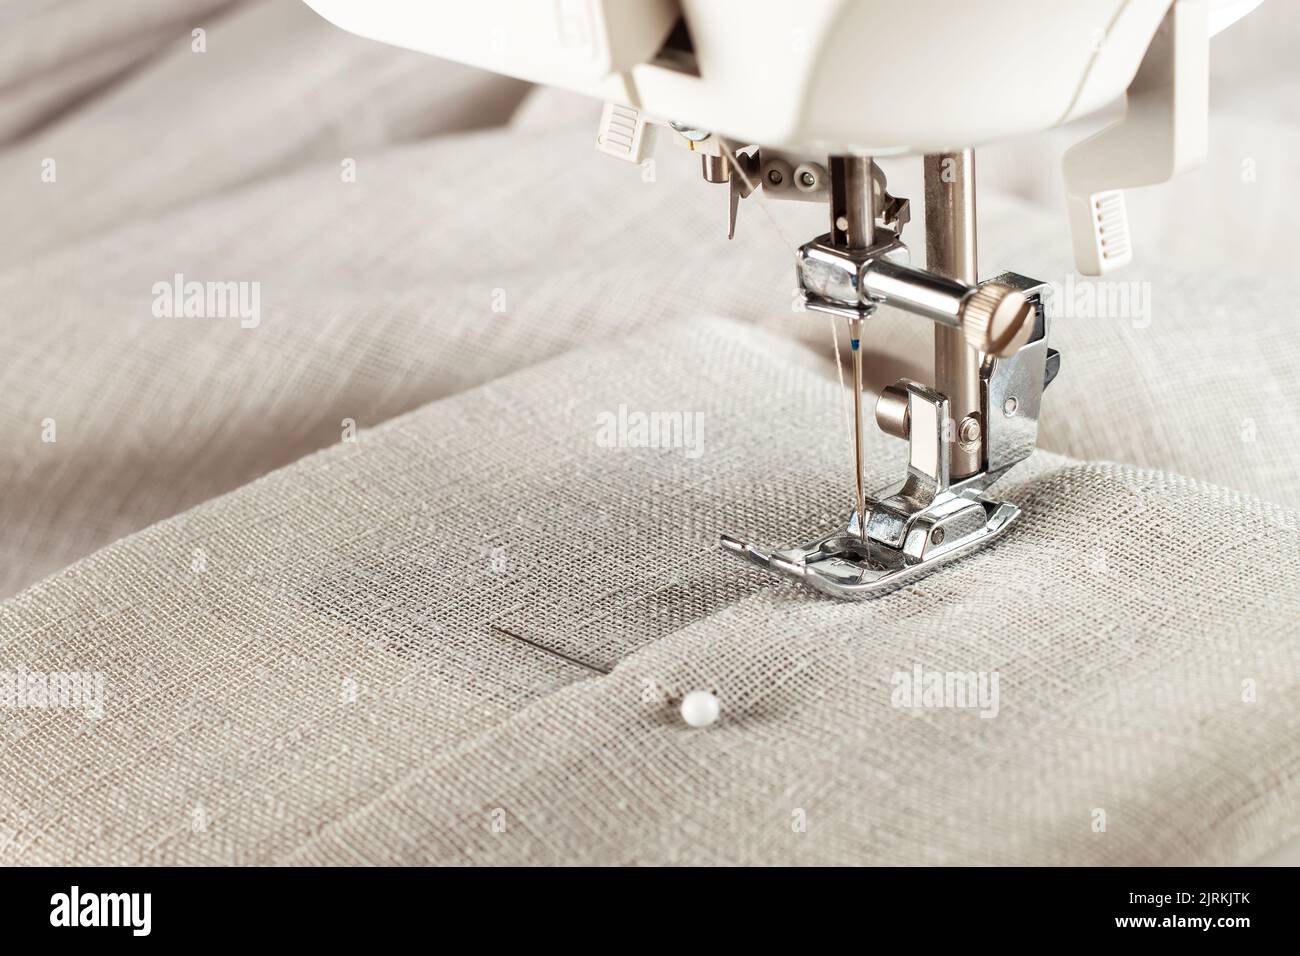 Machine à coudre moderne presser le pied avec le tissu et le fil de lin, gros plan, espace de copie. Processus de couture vêtements, rideaux, tissus d'ameublement. Affaires, passe-temps, h Banque D'Images